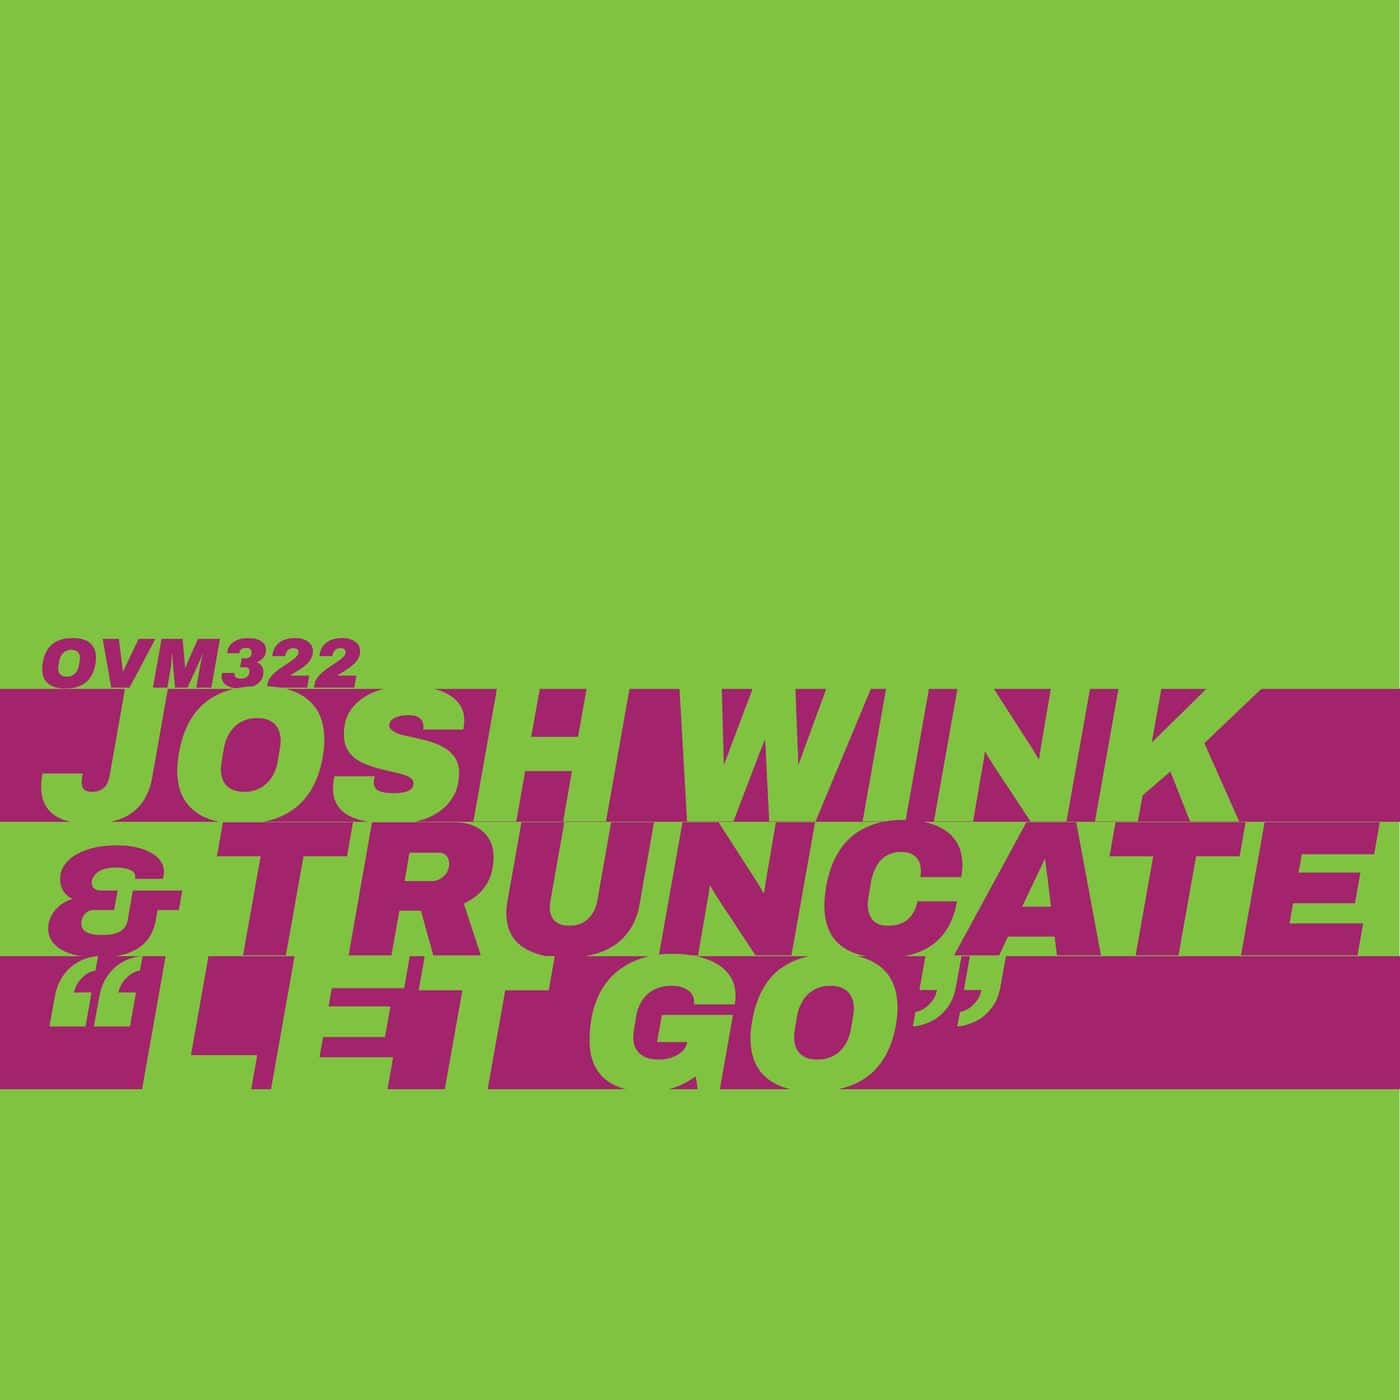 Download Josh Wink, Truncate - Let Go on Electrobuzz